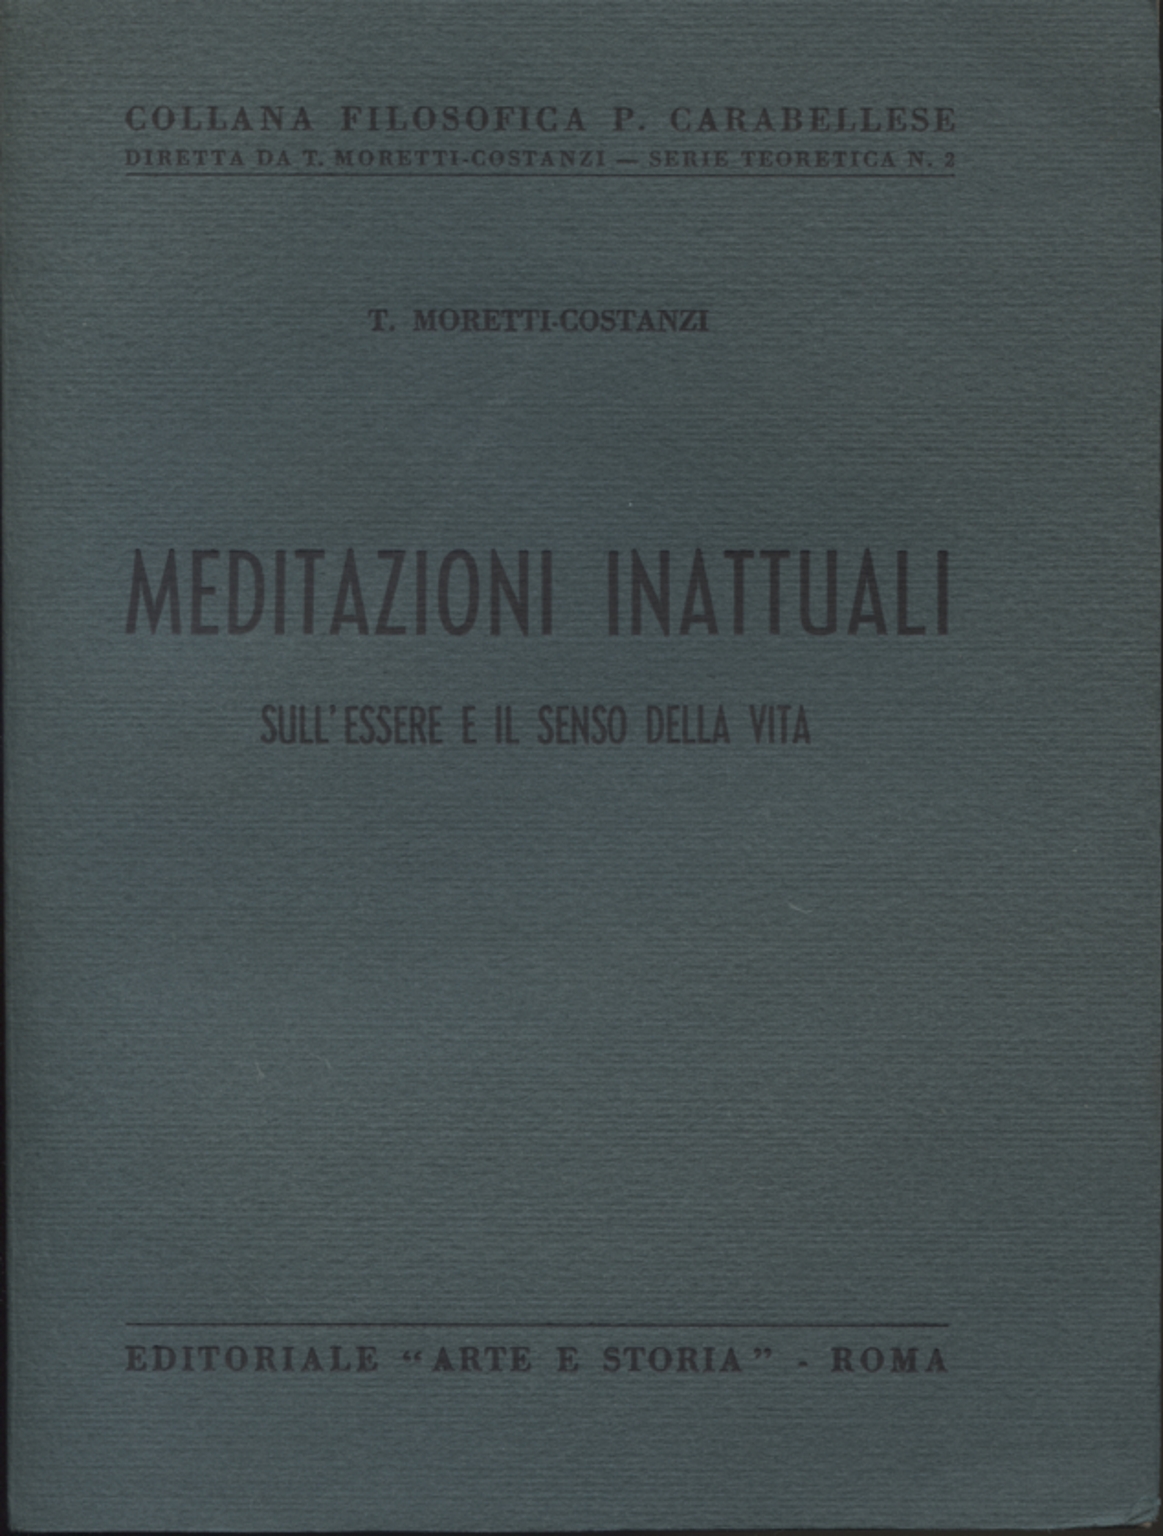 Meditazioni inattuali, Teodorico Moretti-Costanzi